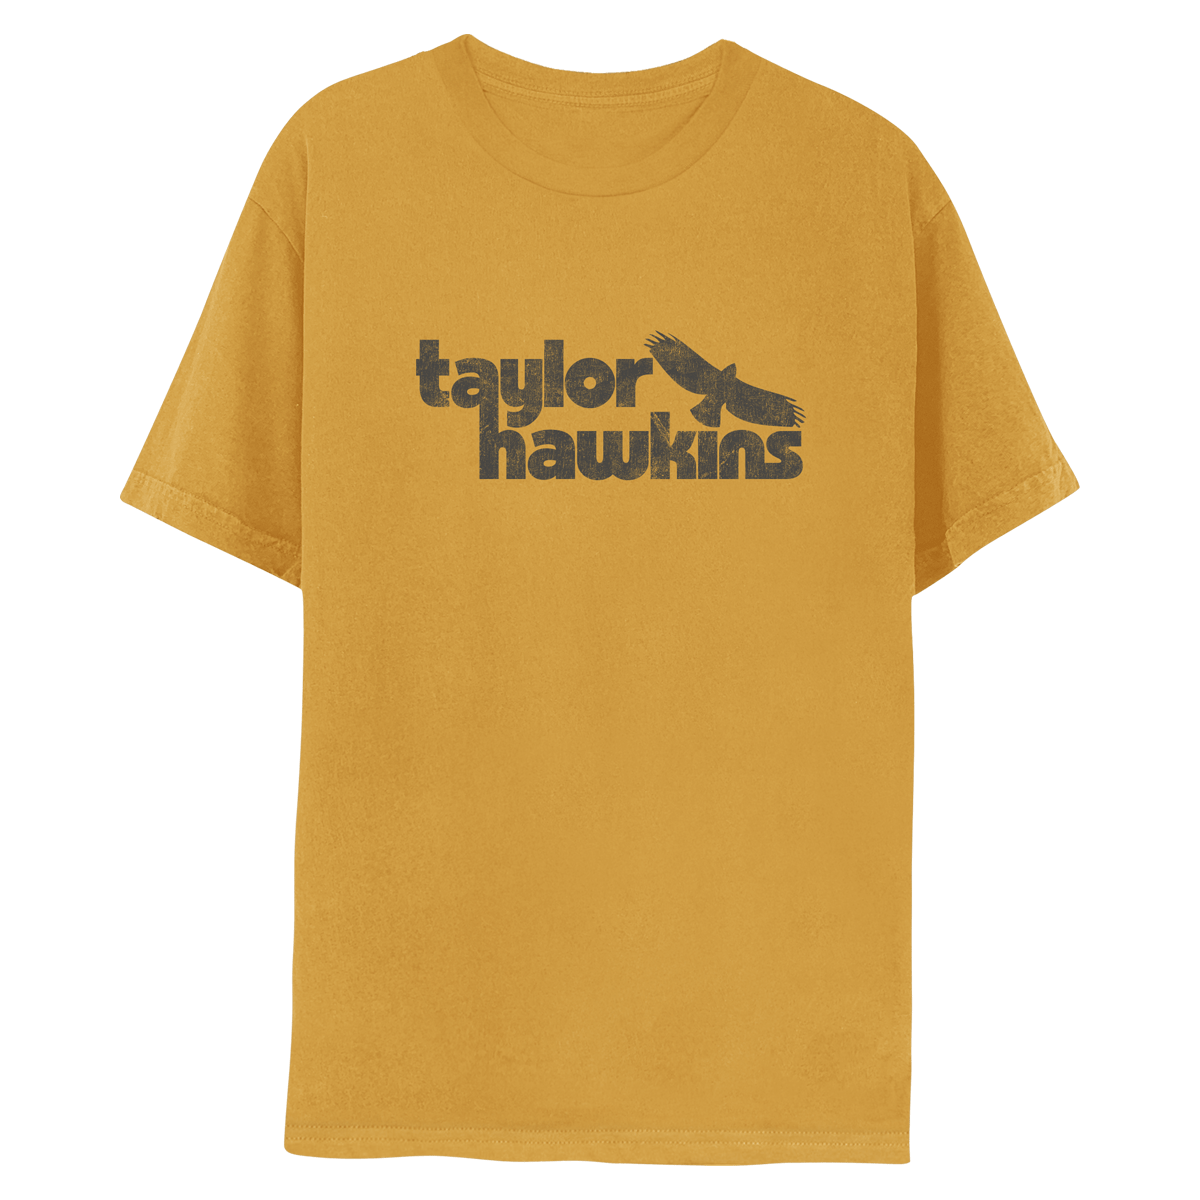 Taylor Hawkins Logo Yellow Tee